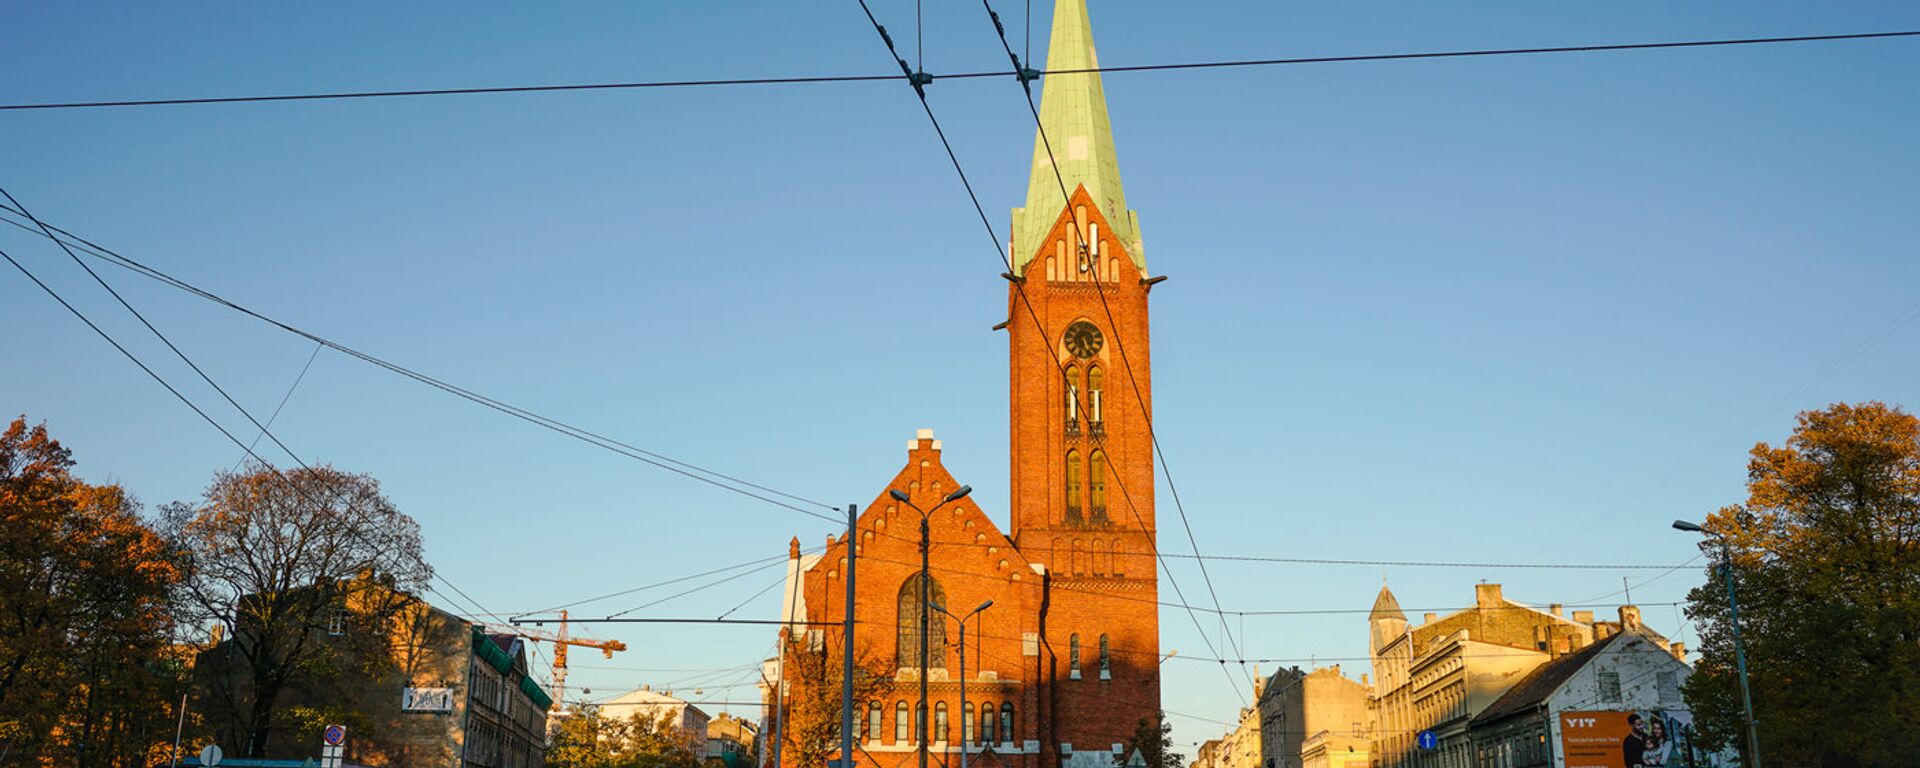 Новая церковь Святой Гертруды - Sputnik Латвия, 1920, 21.08.2020